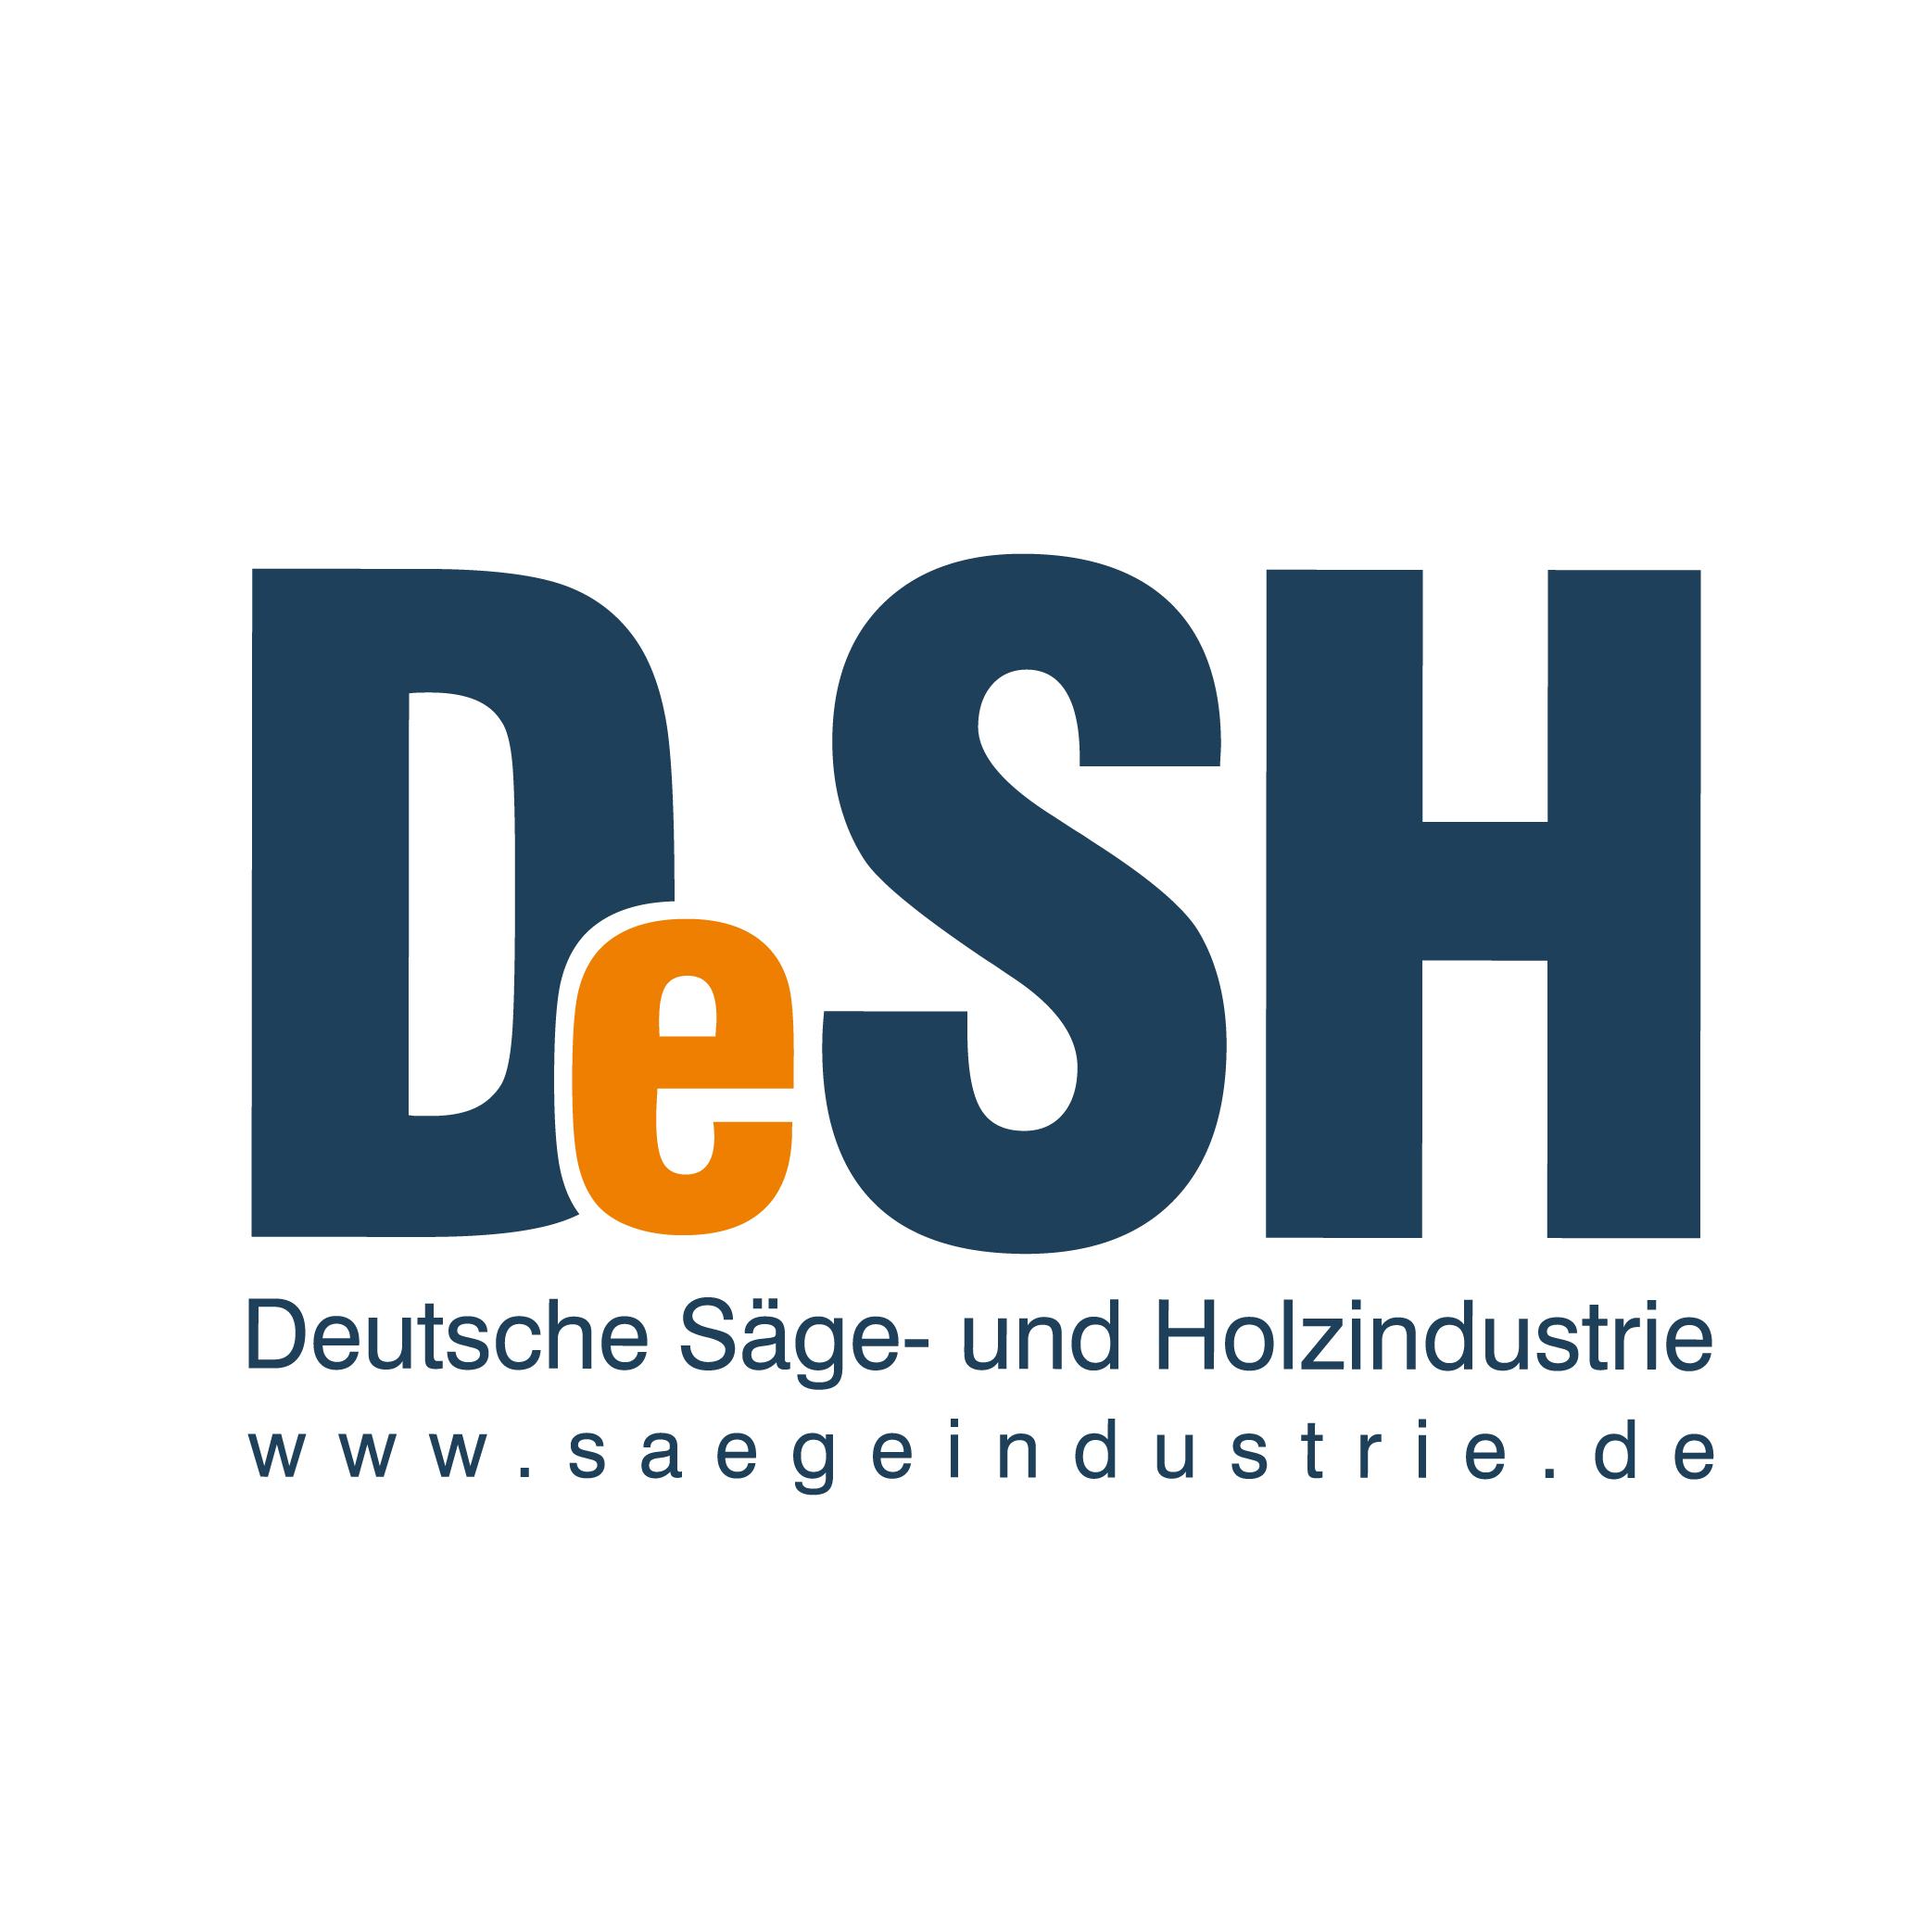 Deutsche Säge - und Holzindustrie